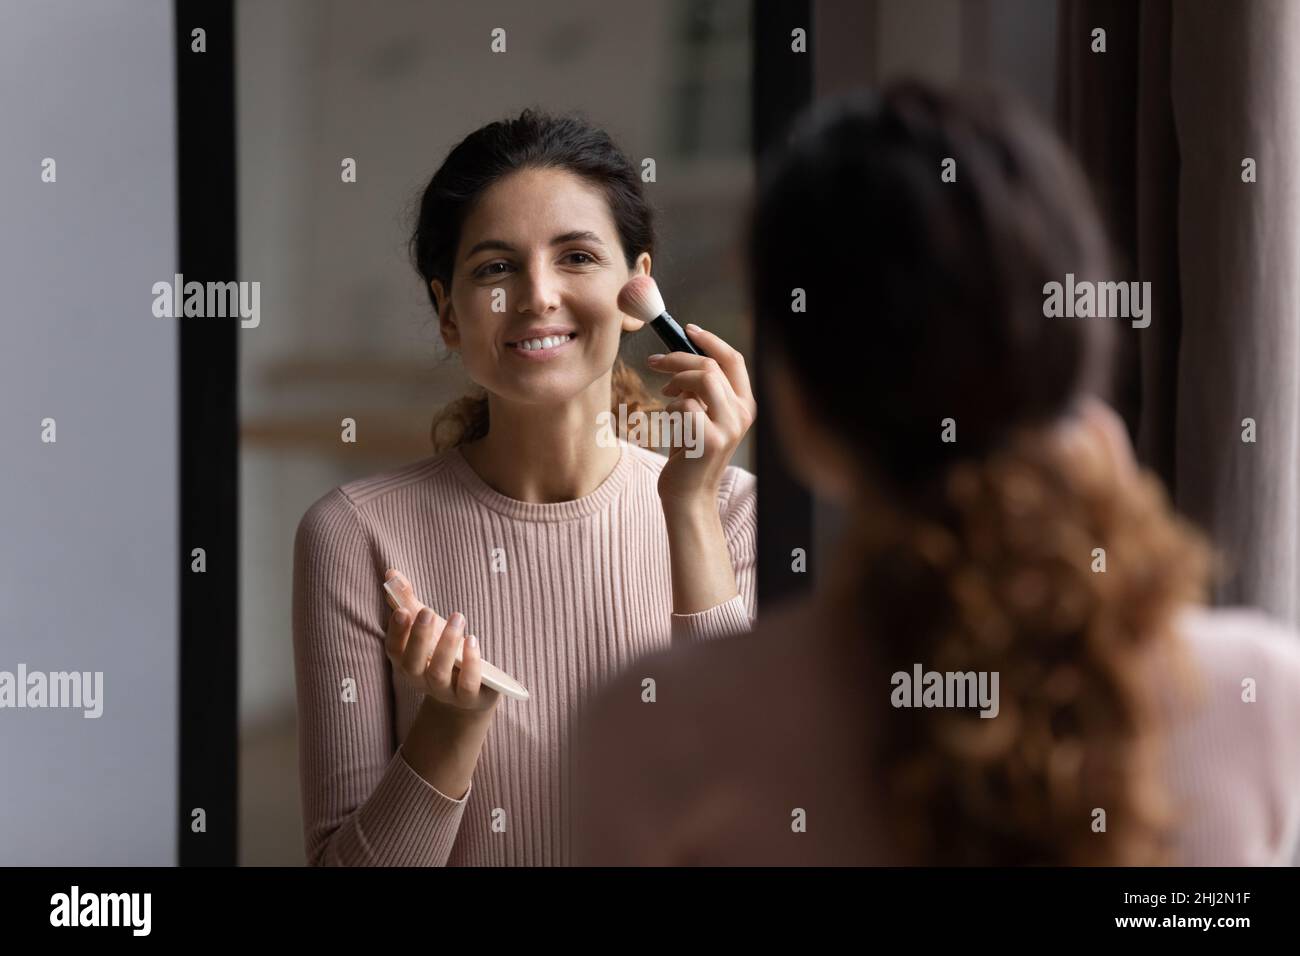 La mujer mira en el espejo sostiene el cepillo aplicando polvo sobre pómulos Foto de stock